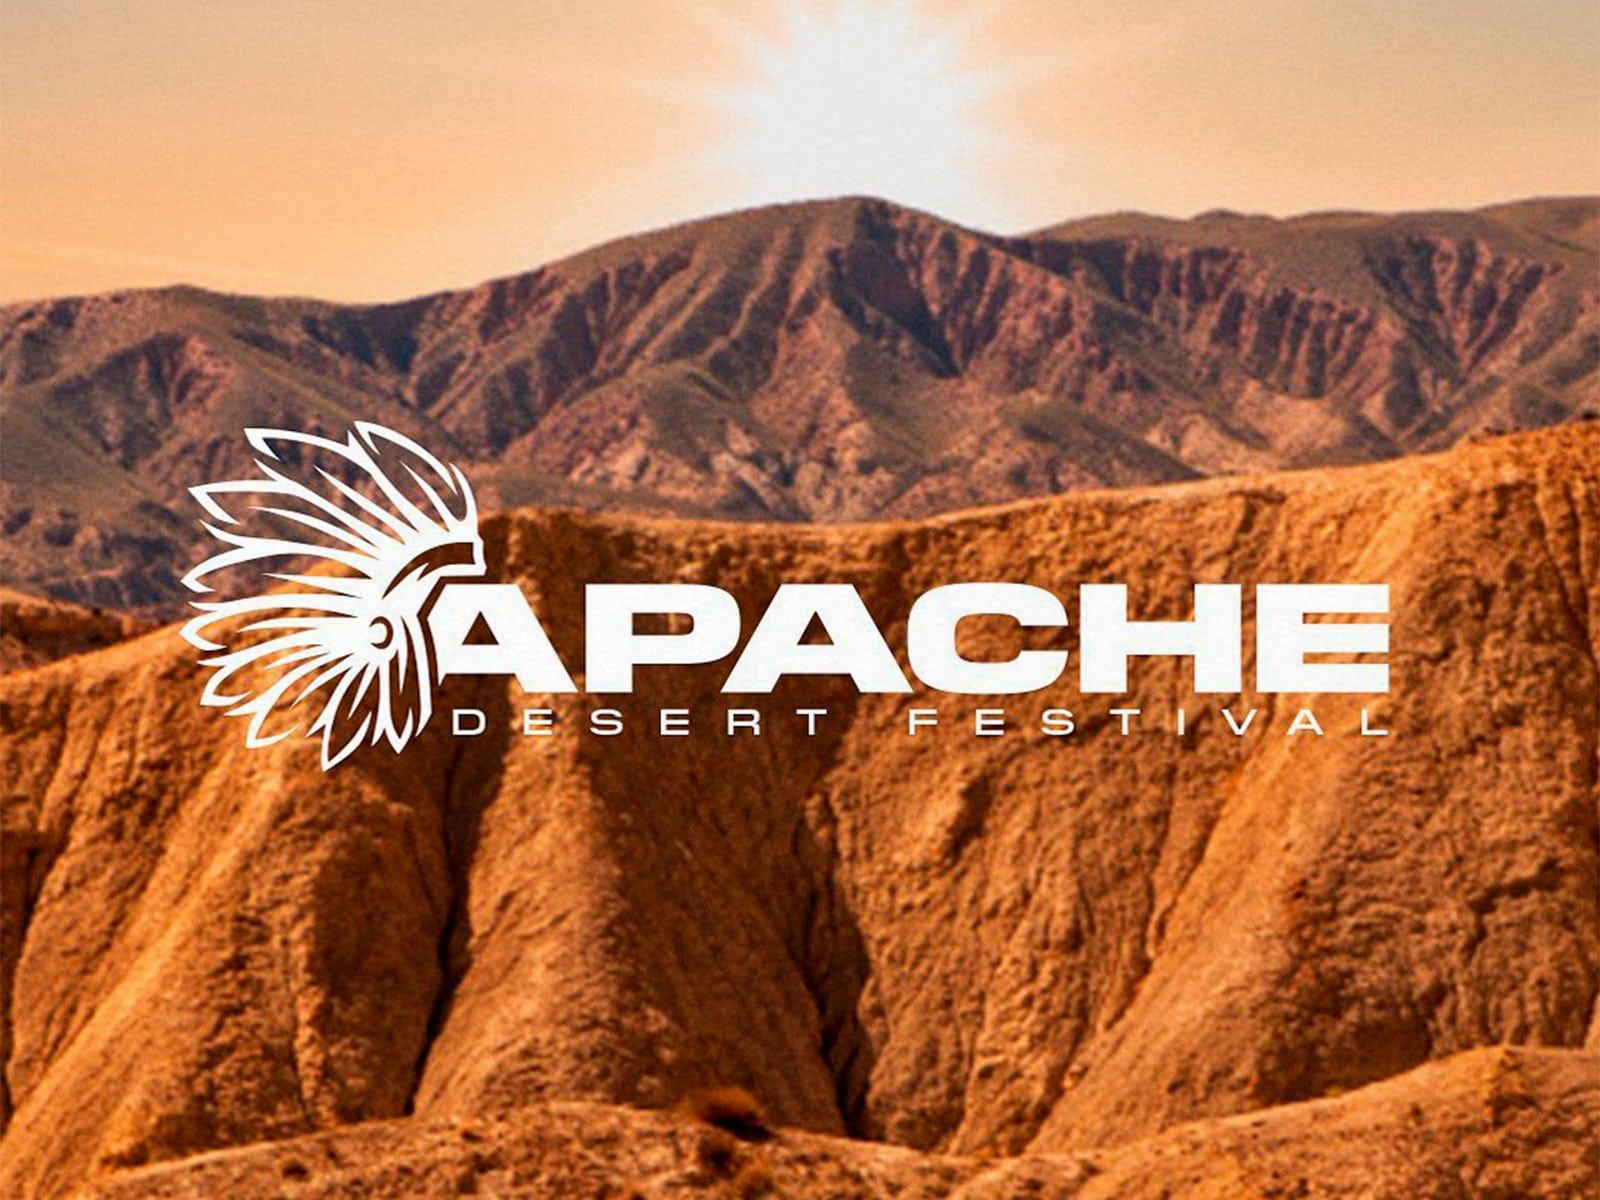 El Apache Desert Festival invadirá el desierto de Tabernas el próximo 1 de mayo